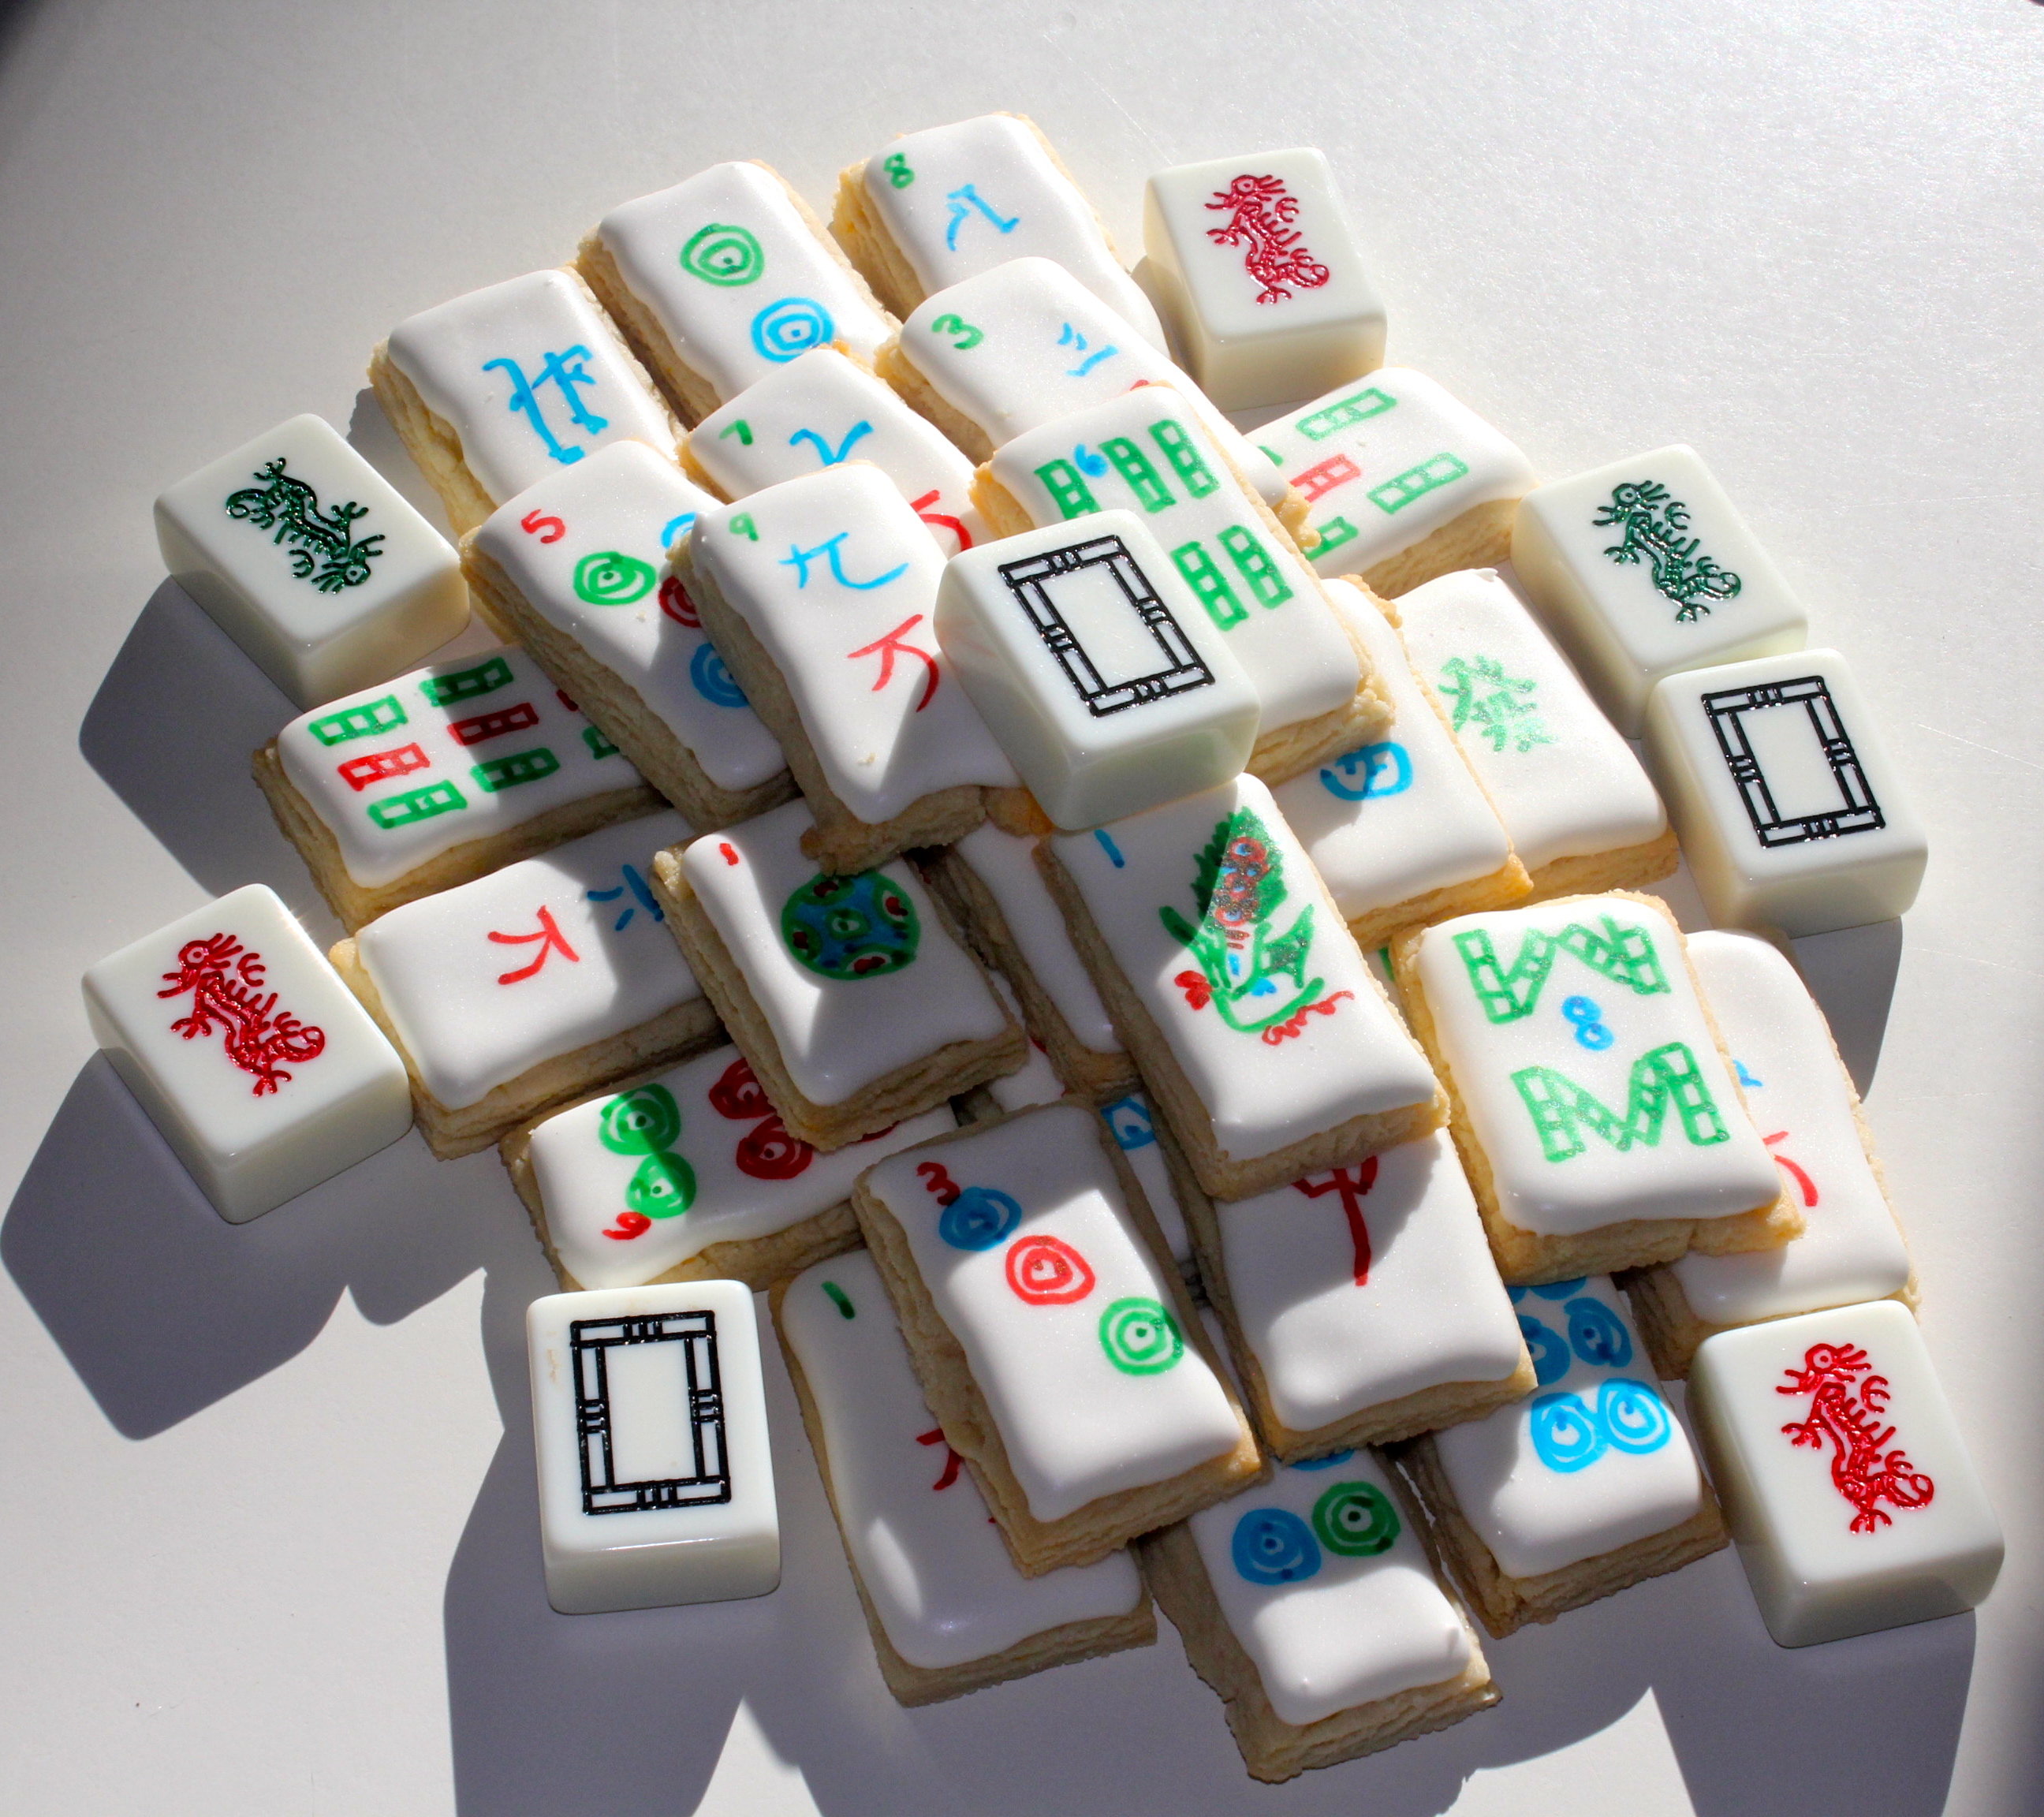 war mahjong tiles